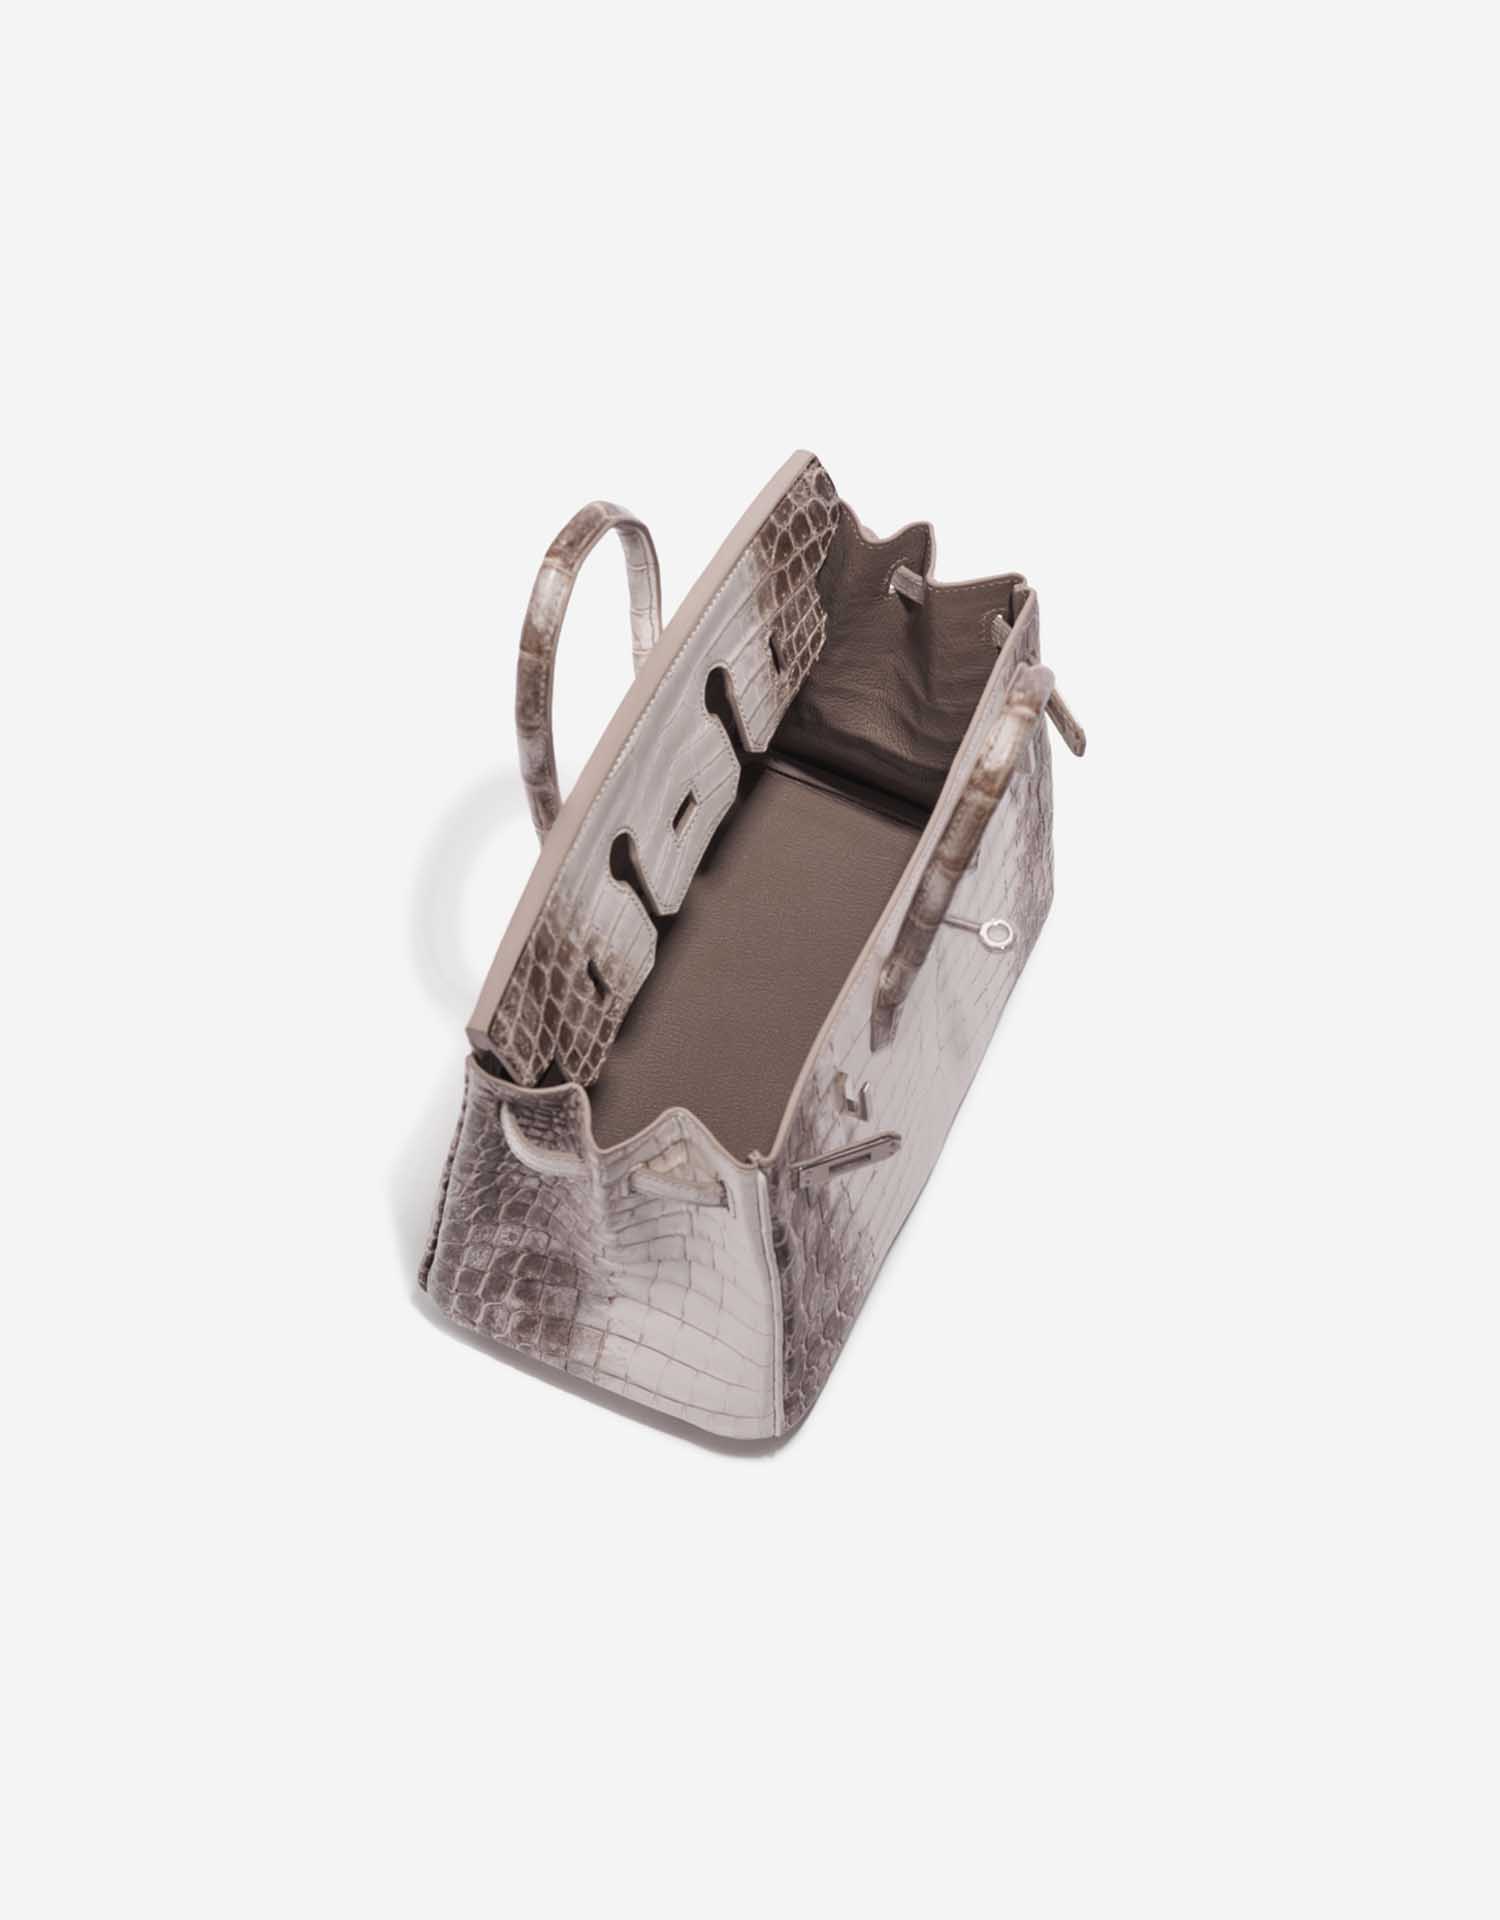 Pre-owned Hermès Tasche Birkin 25 Niloticus Crocodile Himalaya Blanc Brown, White Inside | Verkaufen Sie Ihre Designer-Tasche auf Saclab.com